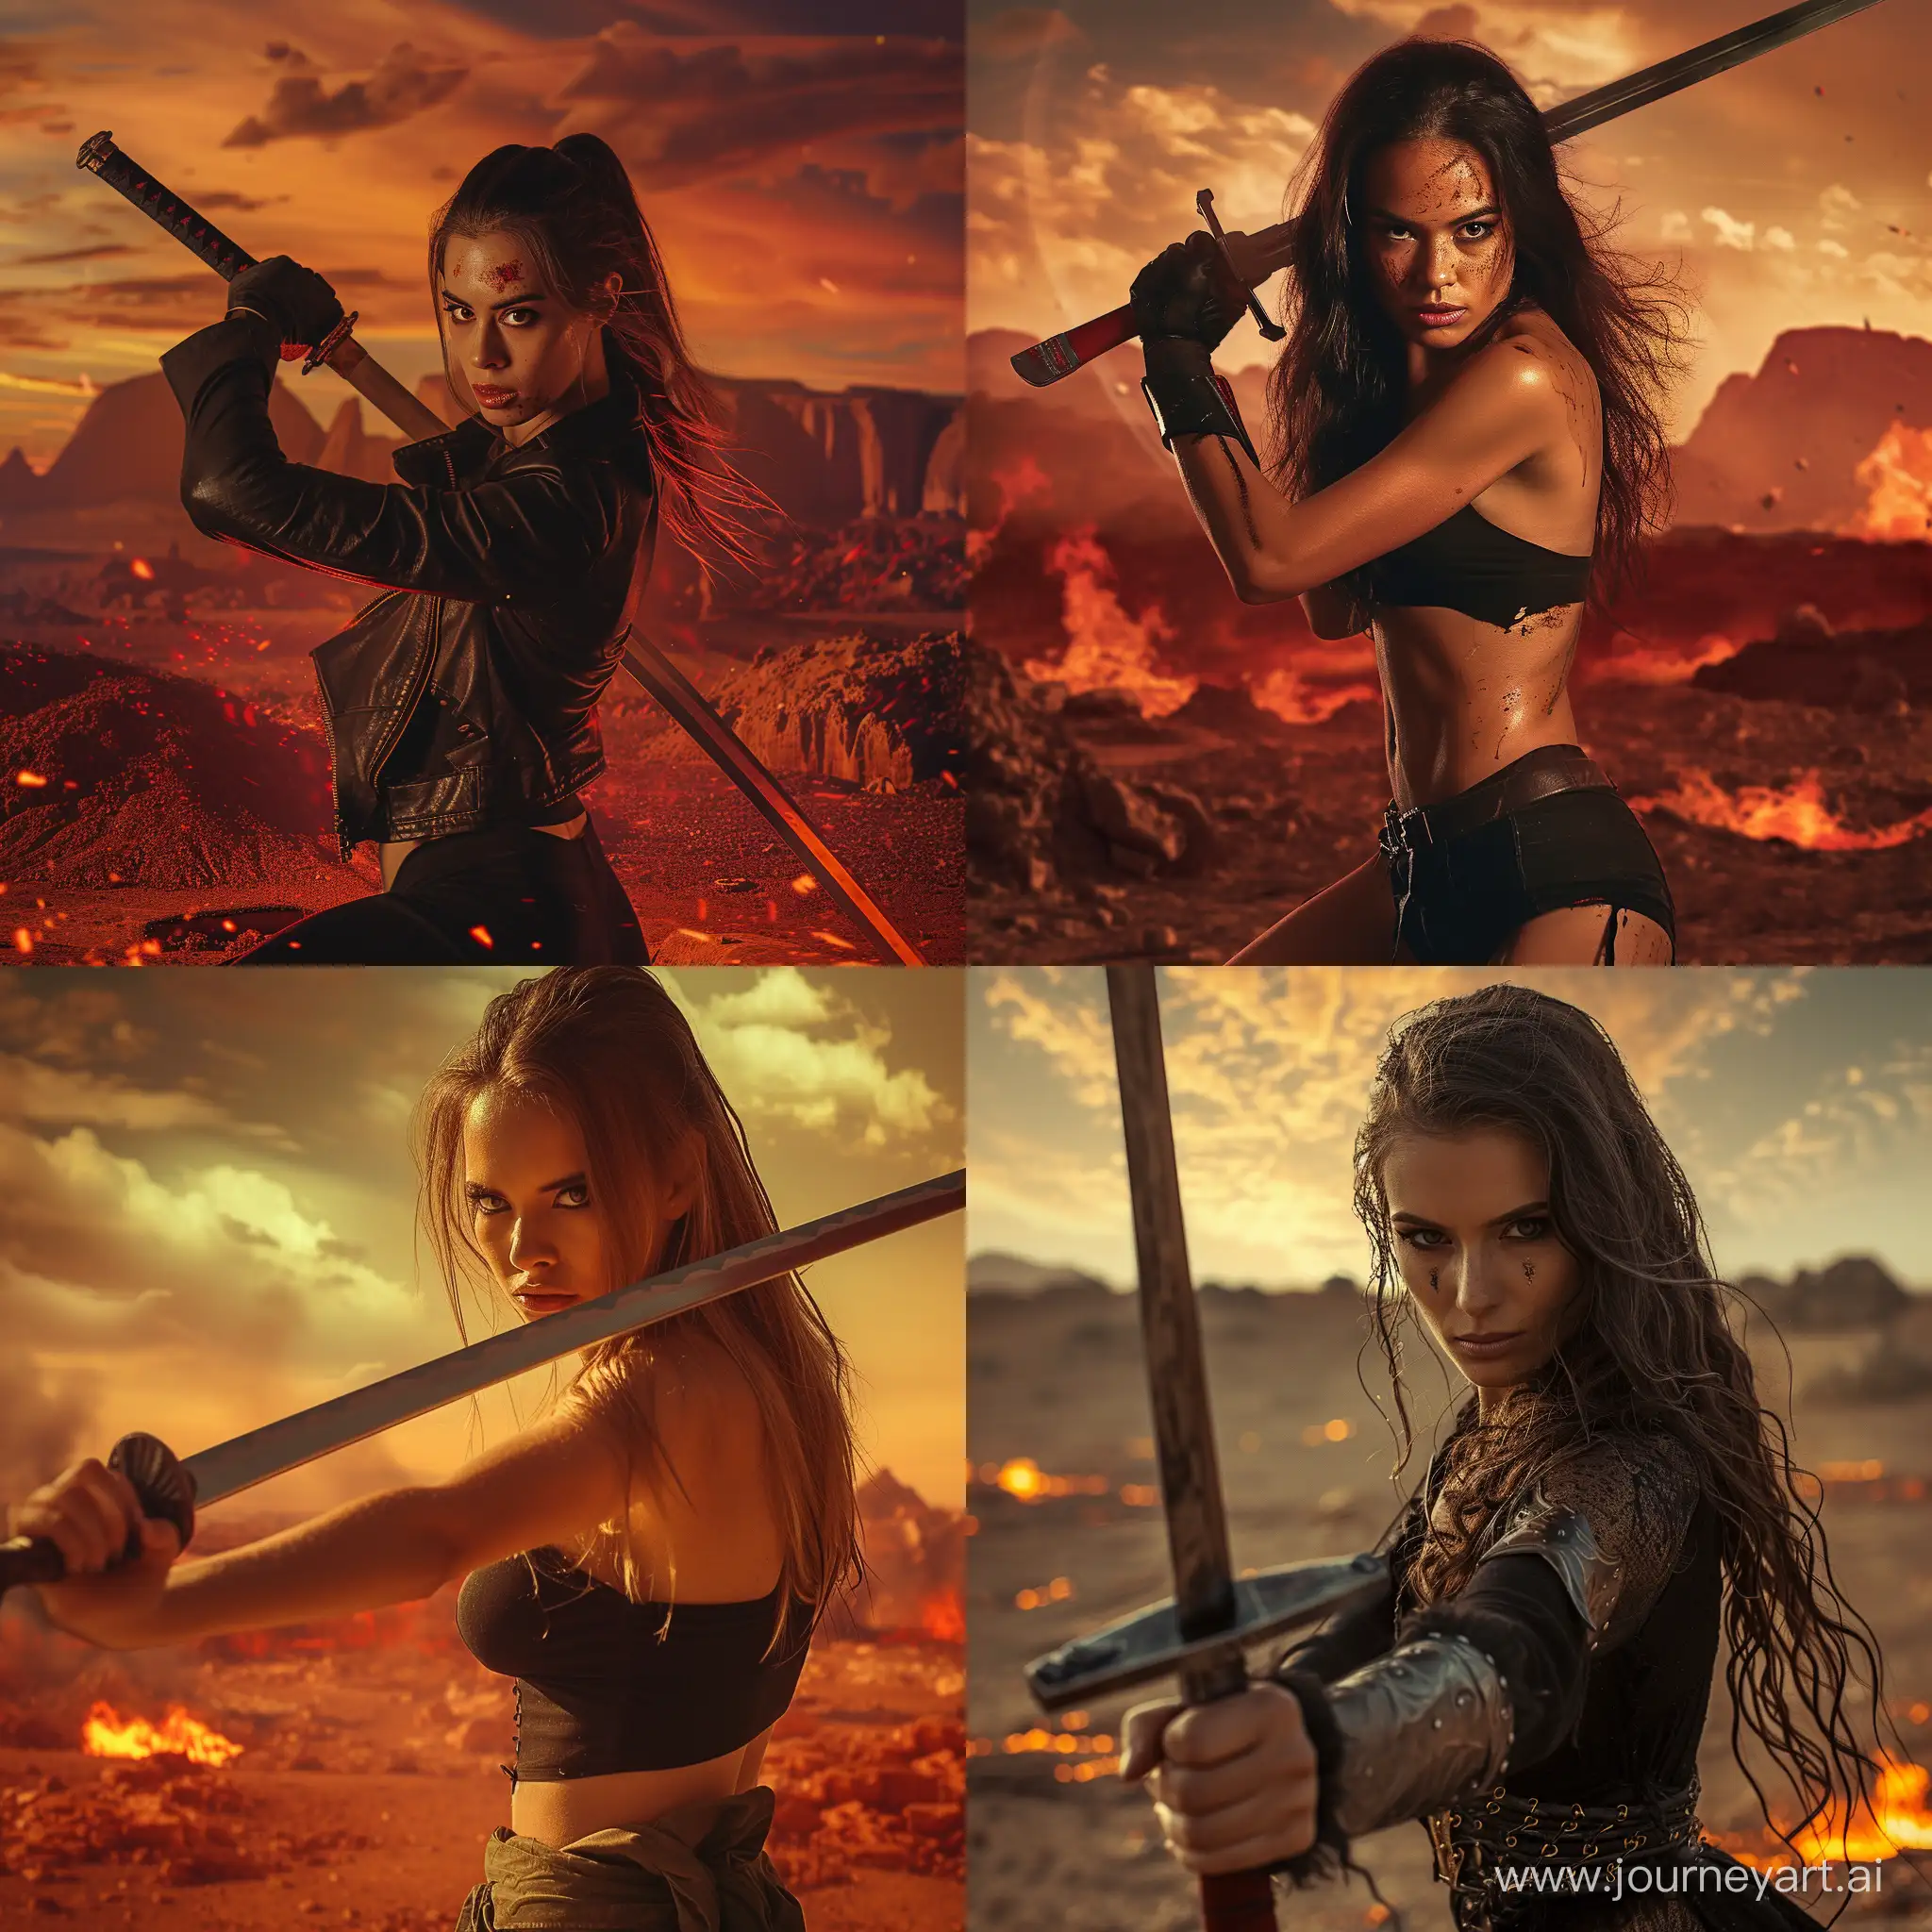 Fierce-Warrior-Woman-Wielding-Sword-in-SciFi-Apocalyptic-Landscape